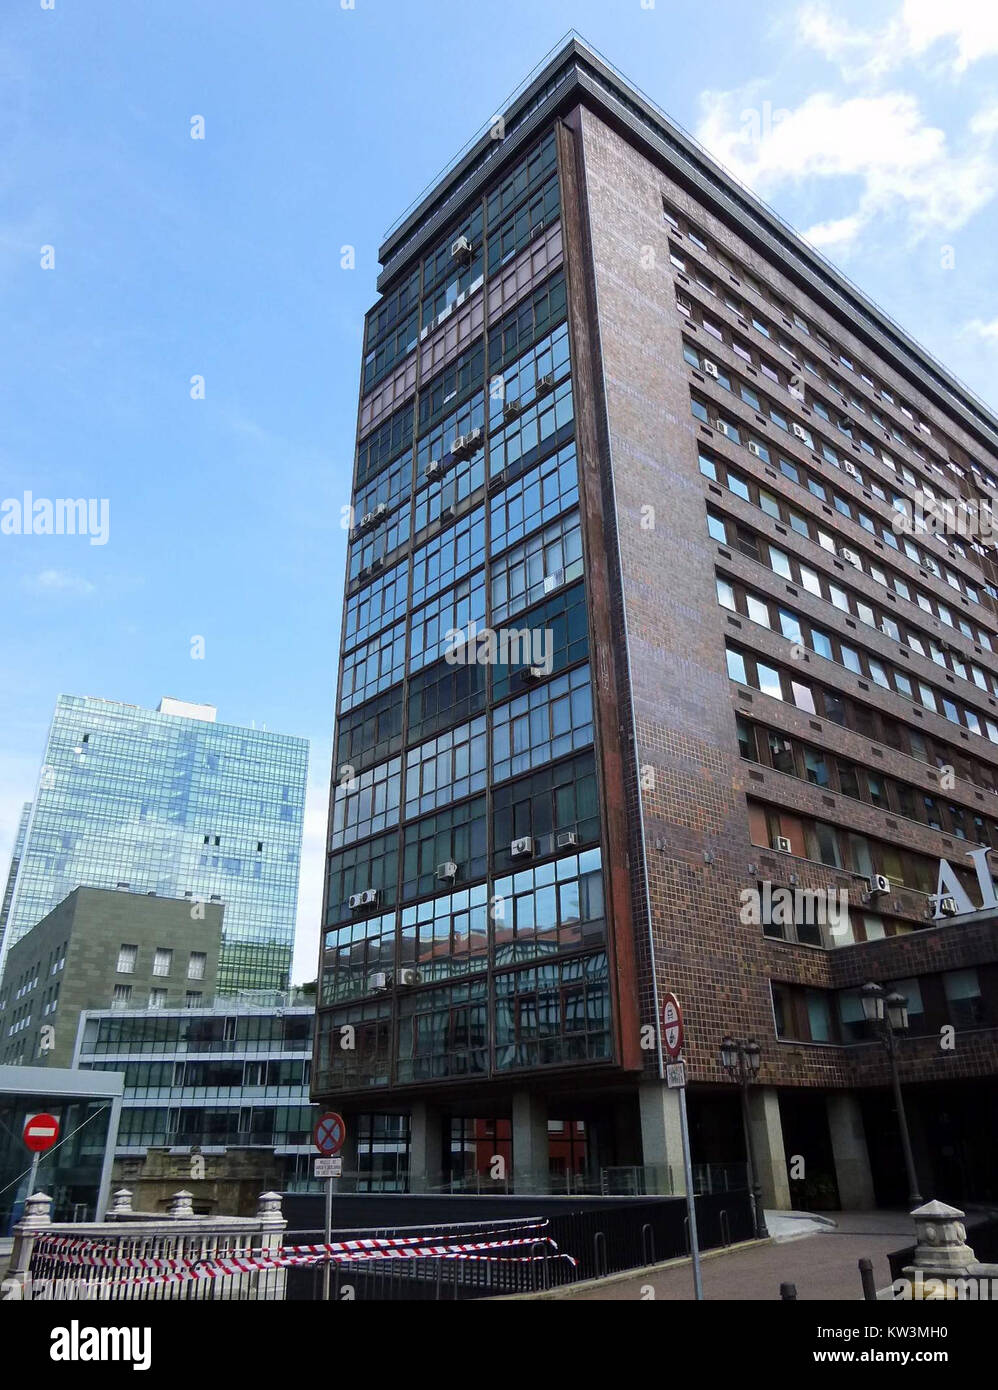 Bilbao   Edificio Albia Stock Photo